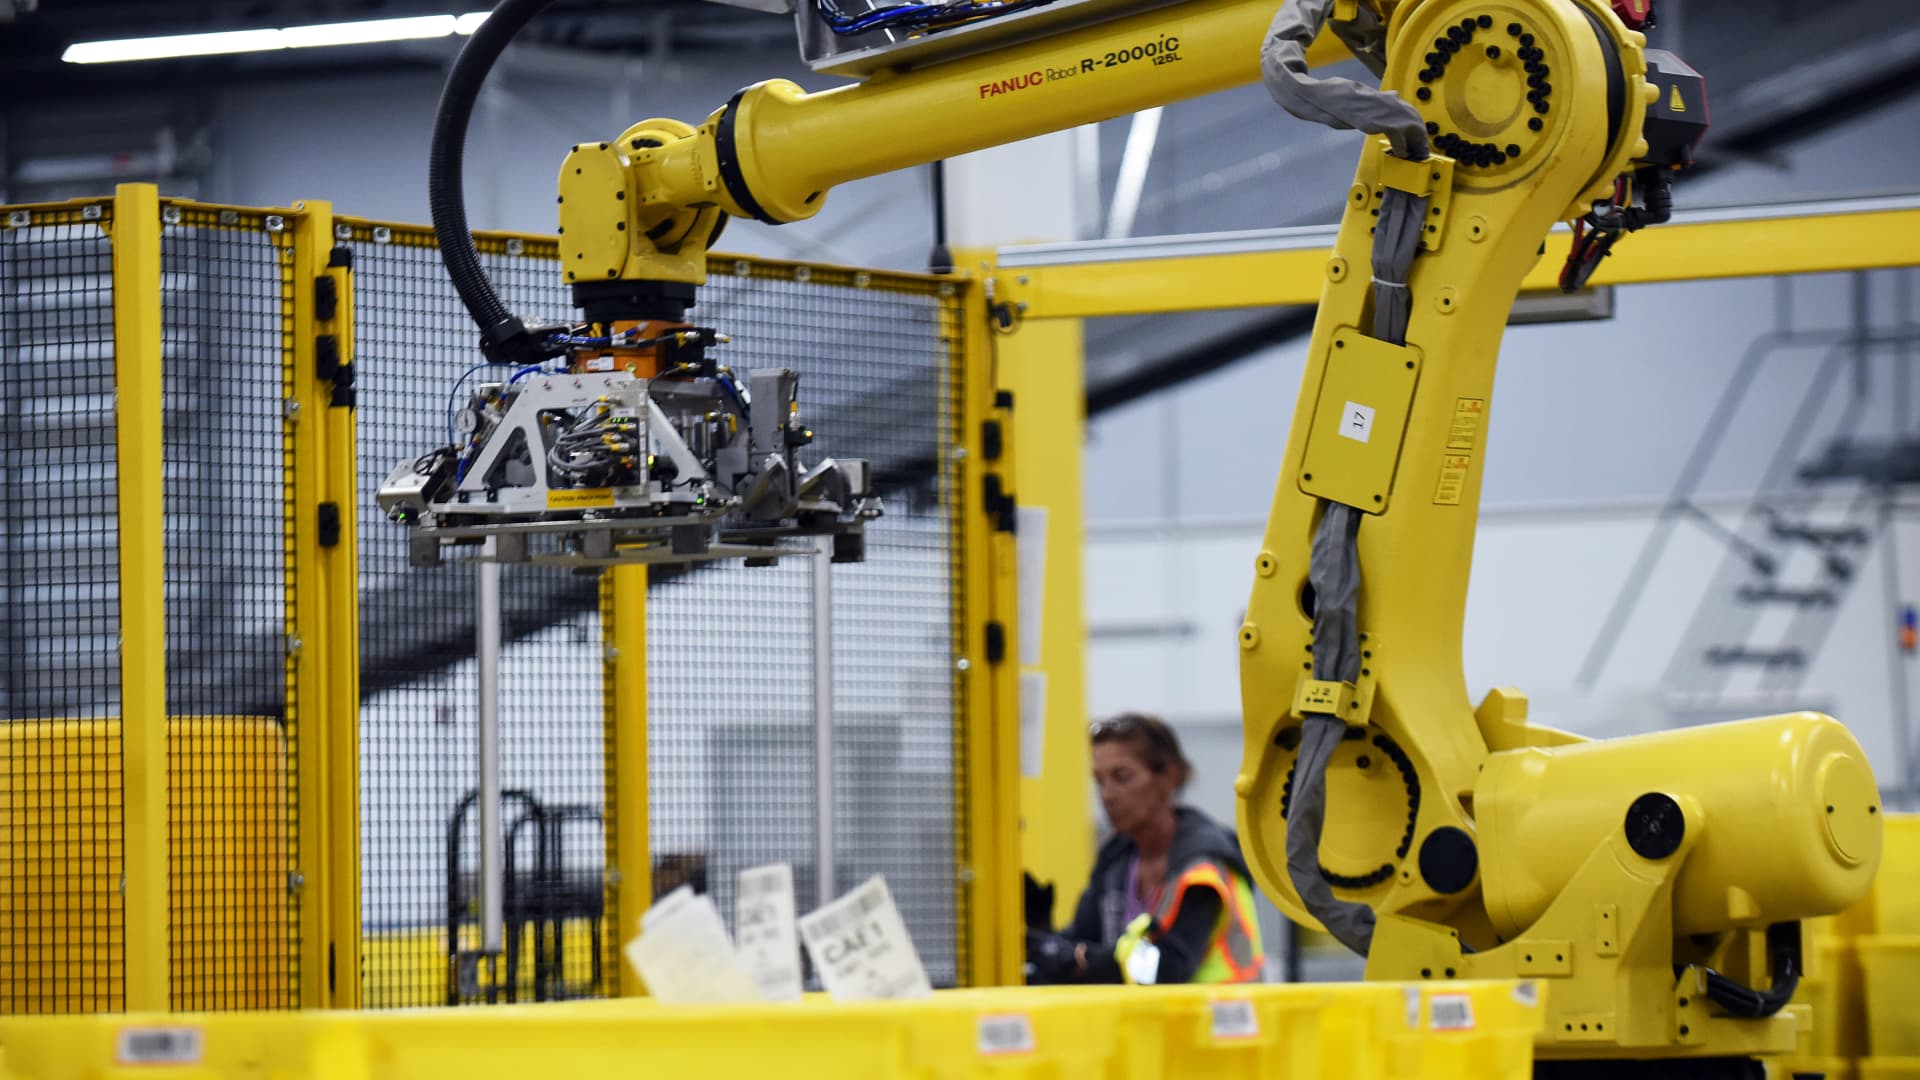 Top Amazon exec says it’s a ‘myth’ robots steal jobs